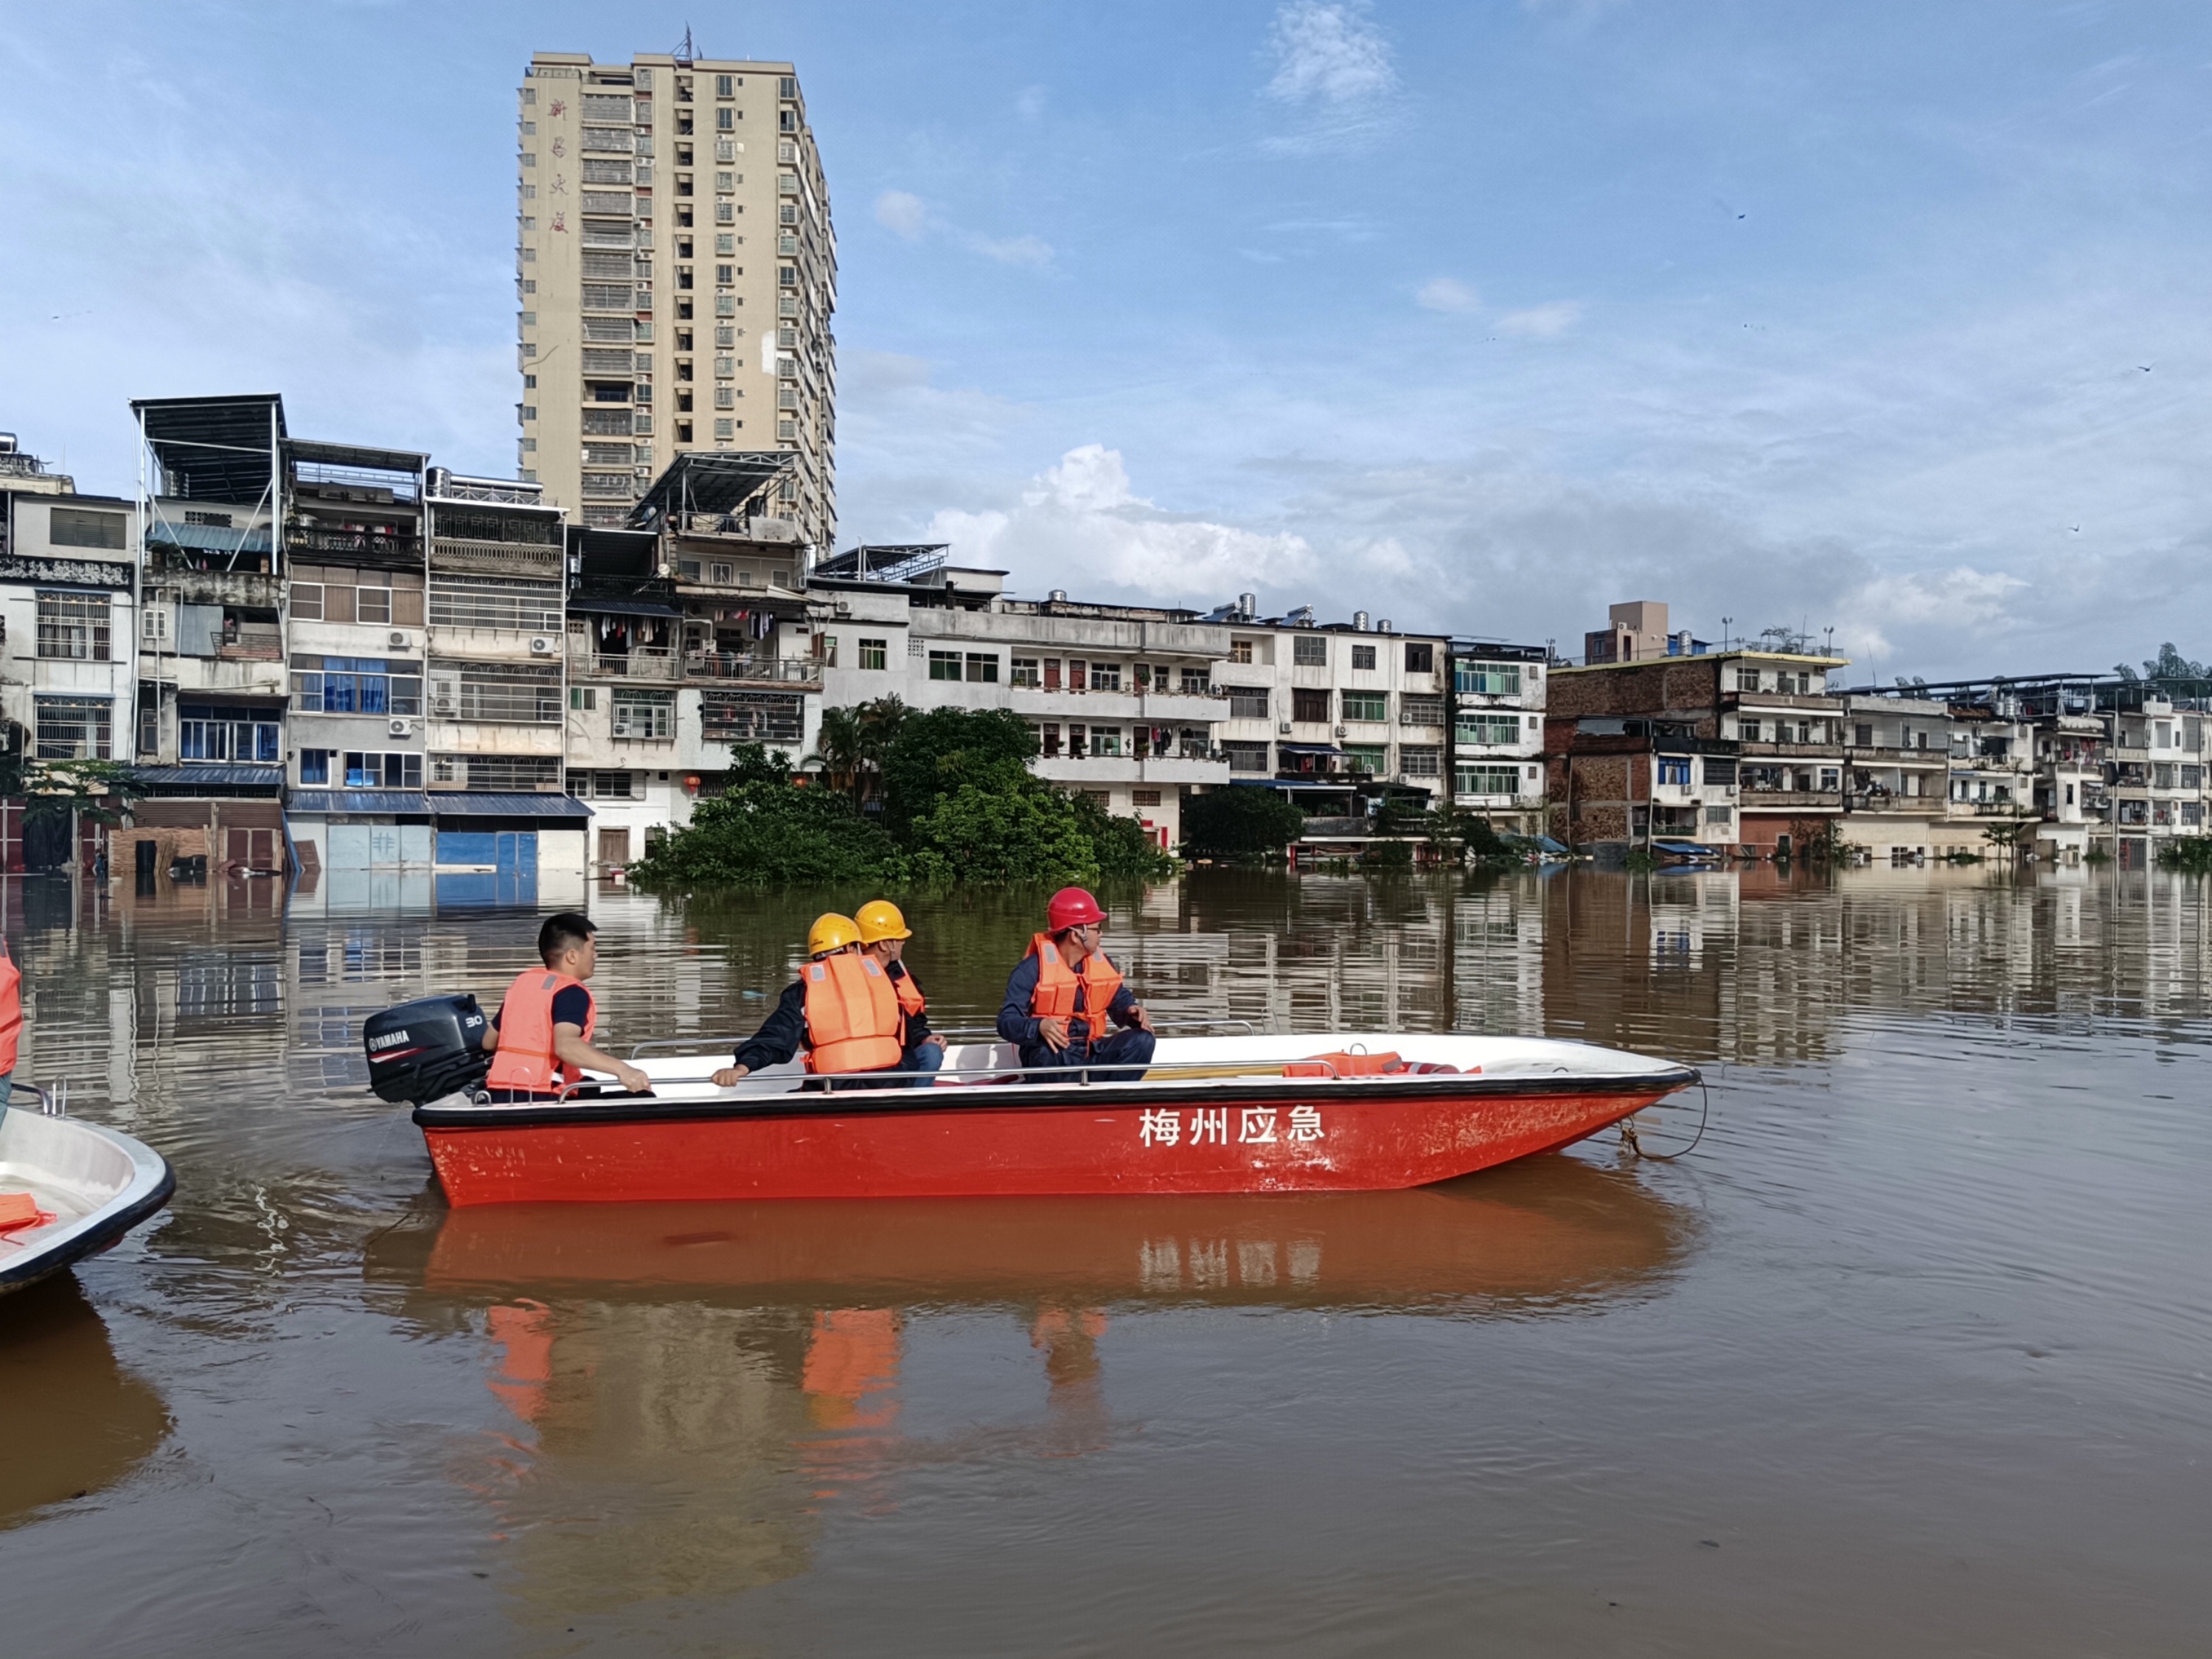 南方电网广东梅州大埔供电局抢修人员乘船前往水浸区域对电力设备进行紧急停运。熊幸摄